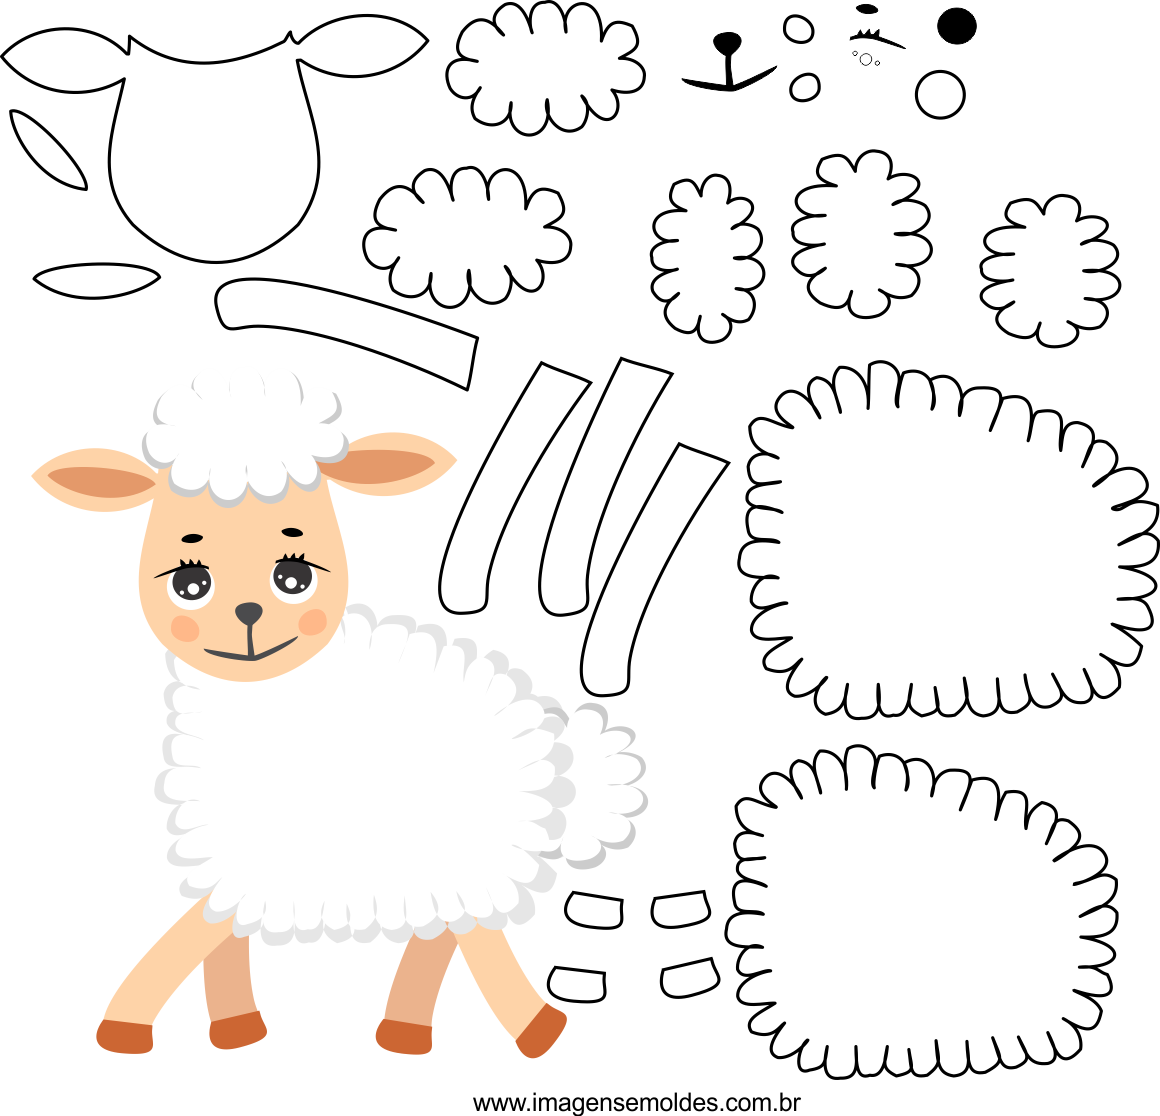 Molde de ovelha 1 para Eva, Feltro, e artesanato, Schafschimmel, sheep mold, molde de oveja